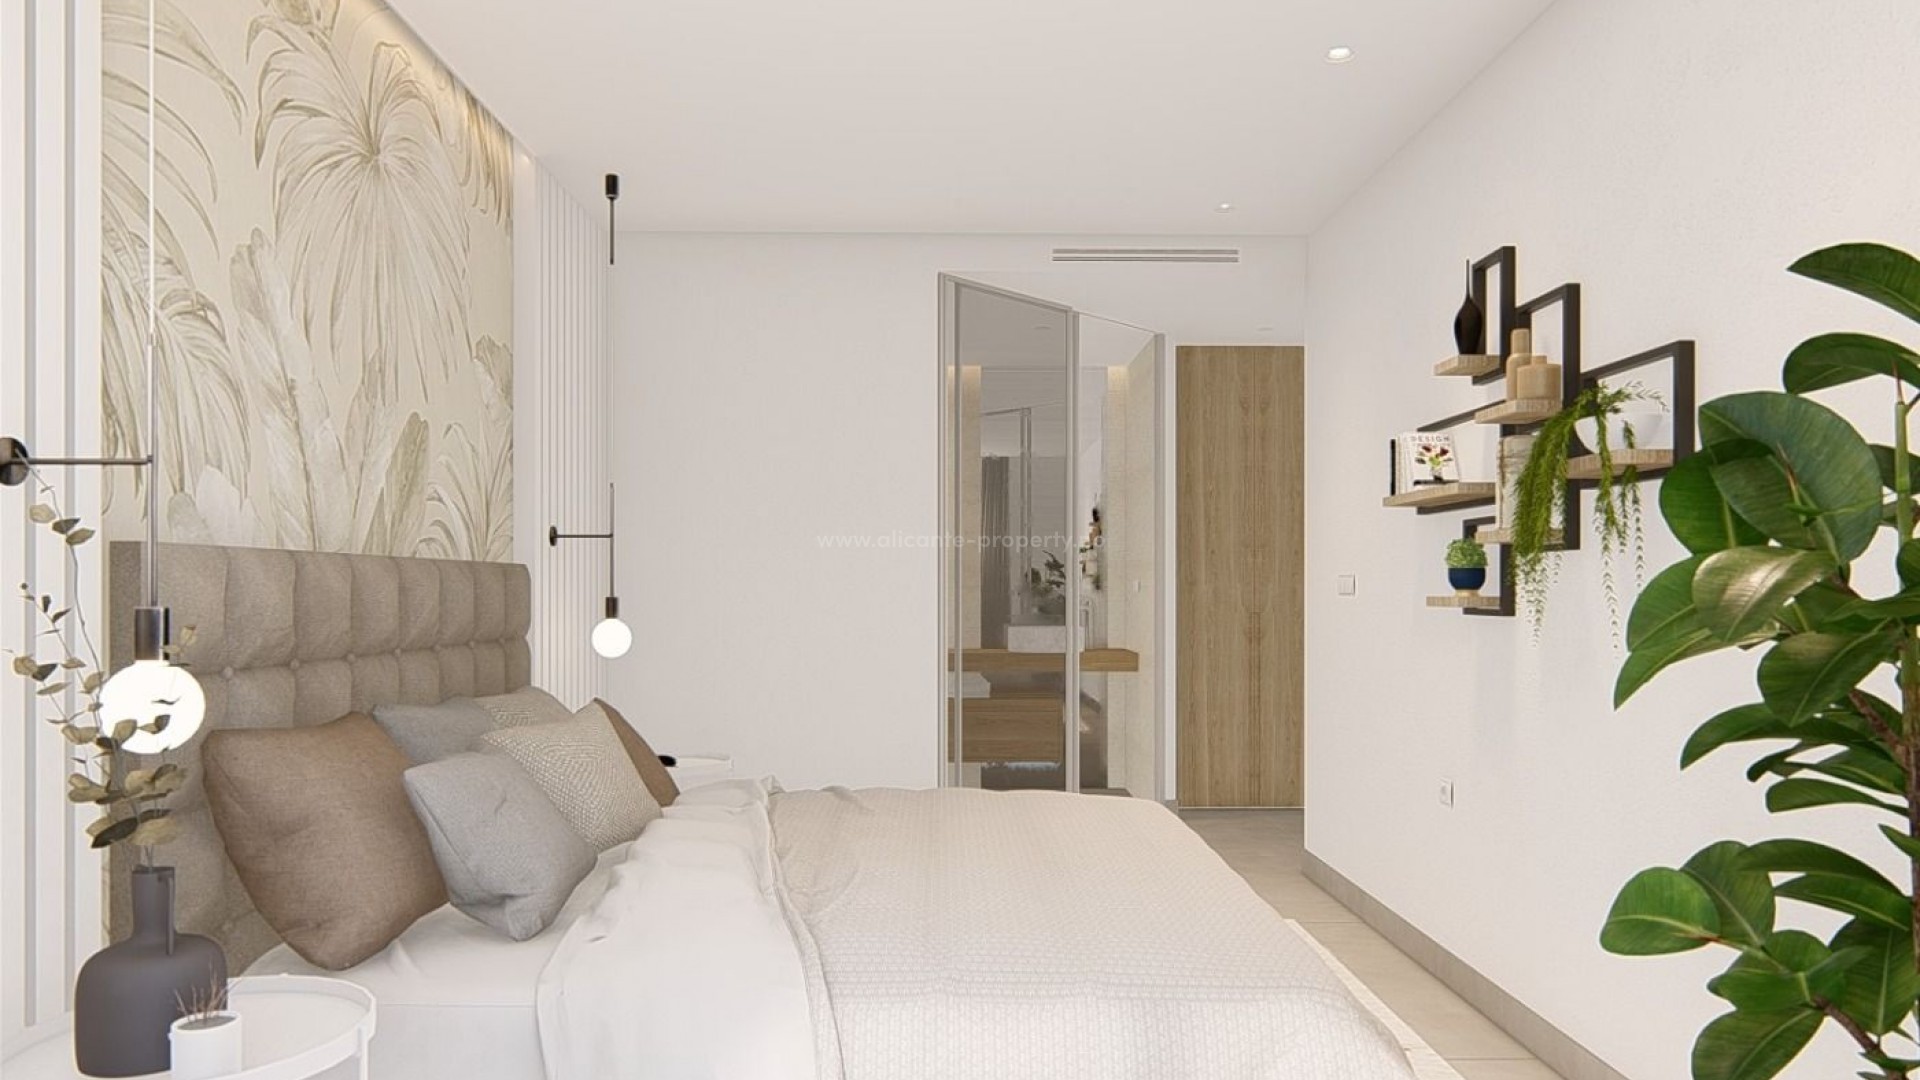 Modern apartments in El Raso, Guardamar del Segura, 2/3 bedrooms, 2 bathrooms, large terraces, communal pools, GYM-Spa area, parking